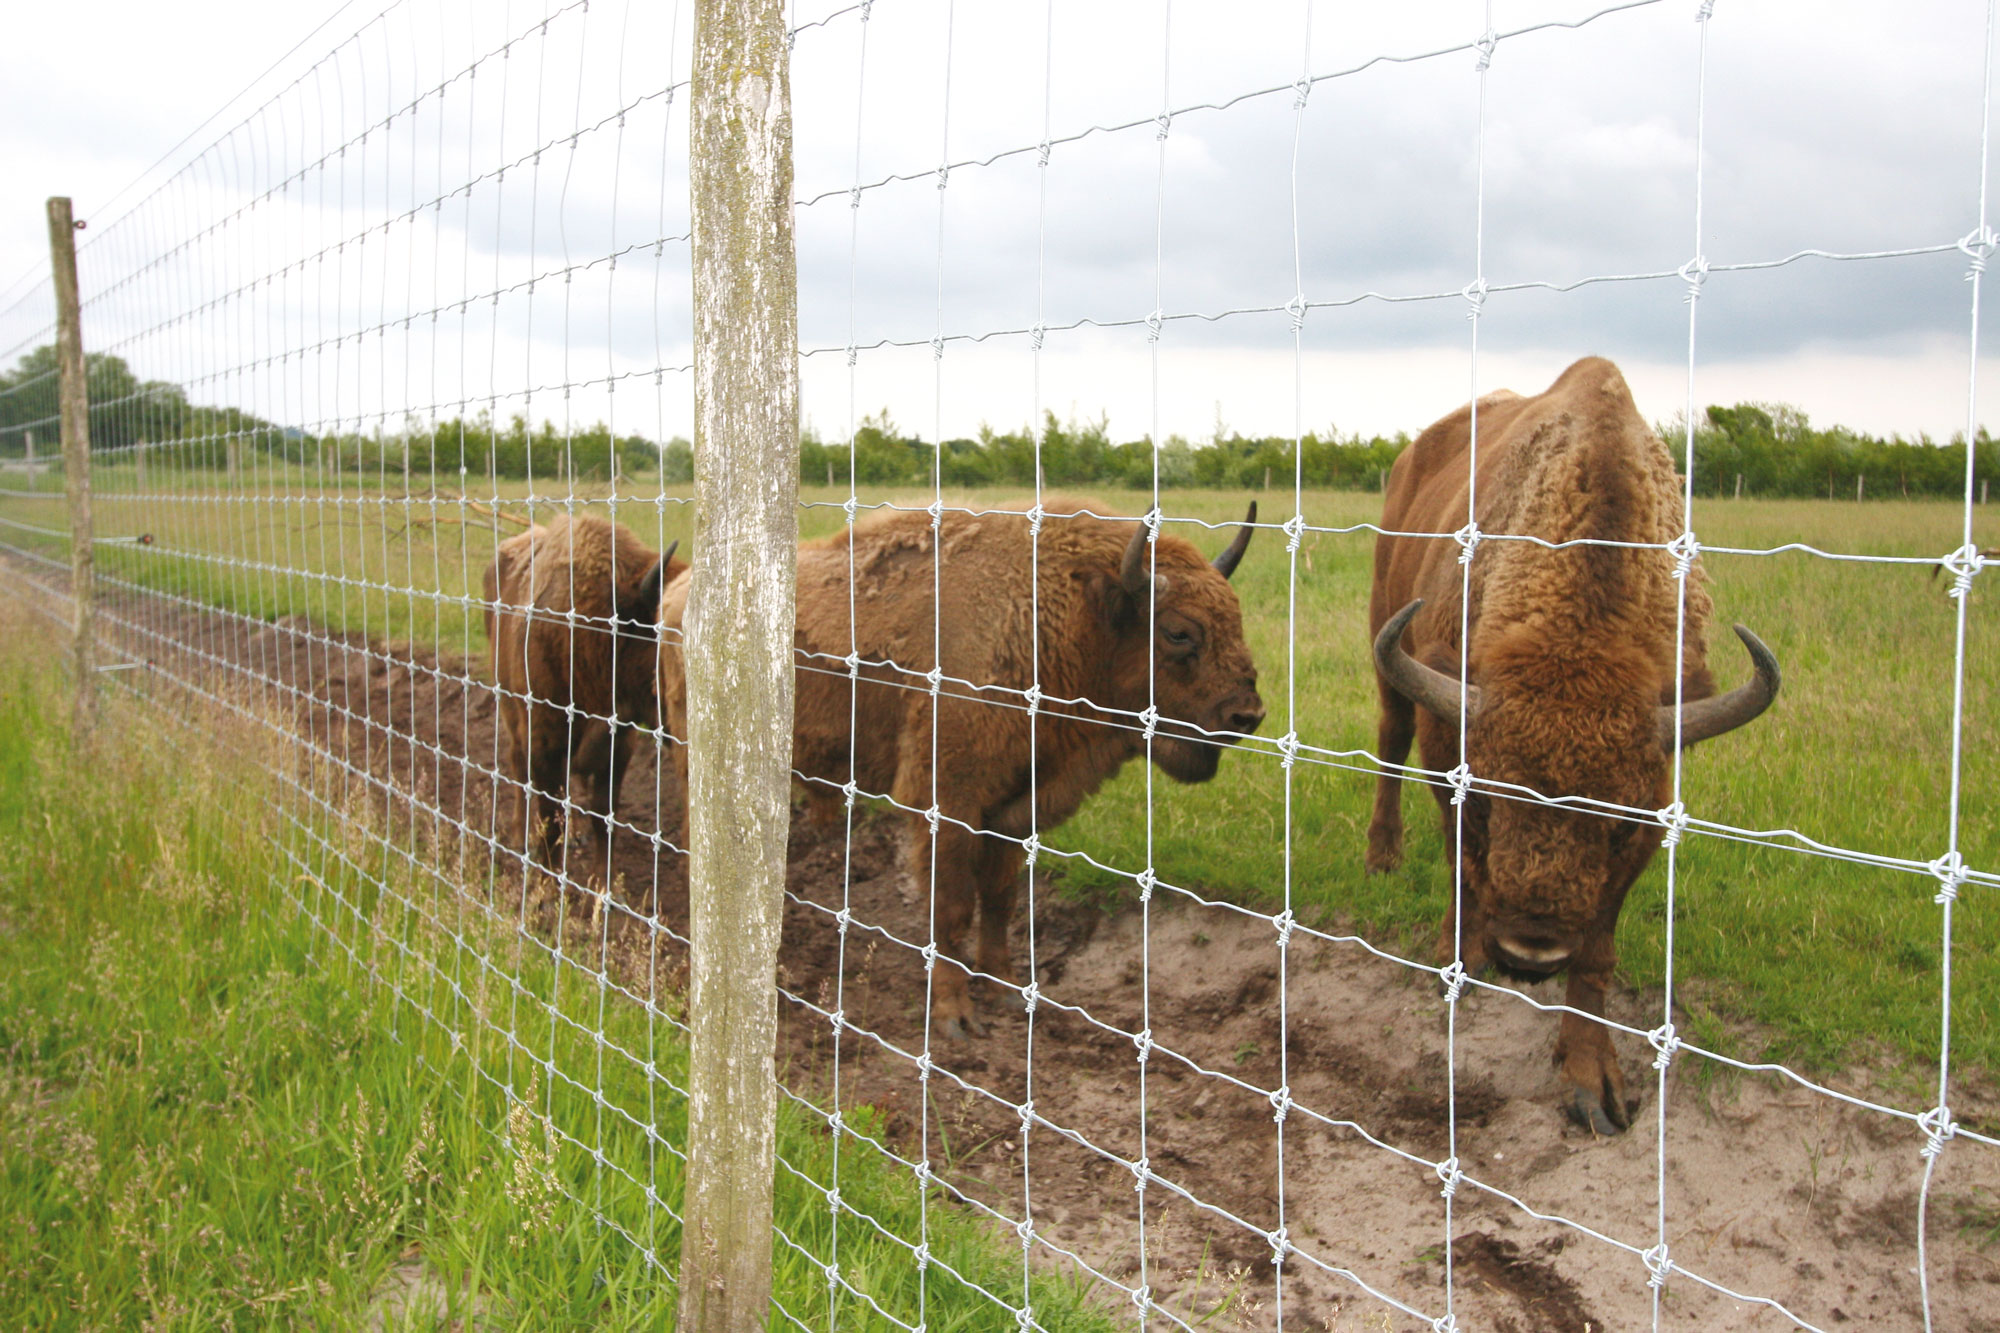 Tre bisons står bakom ett högt nätstängsel i en djurpark.